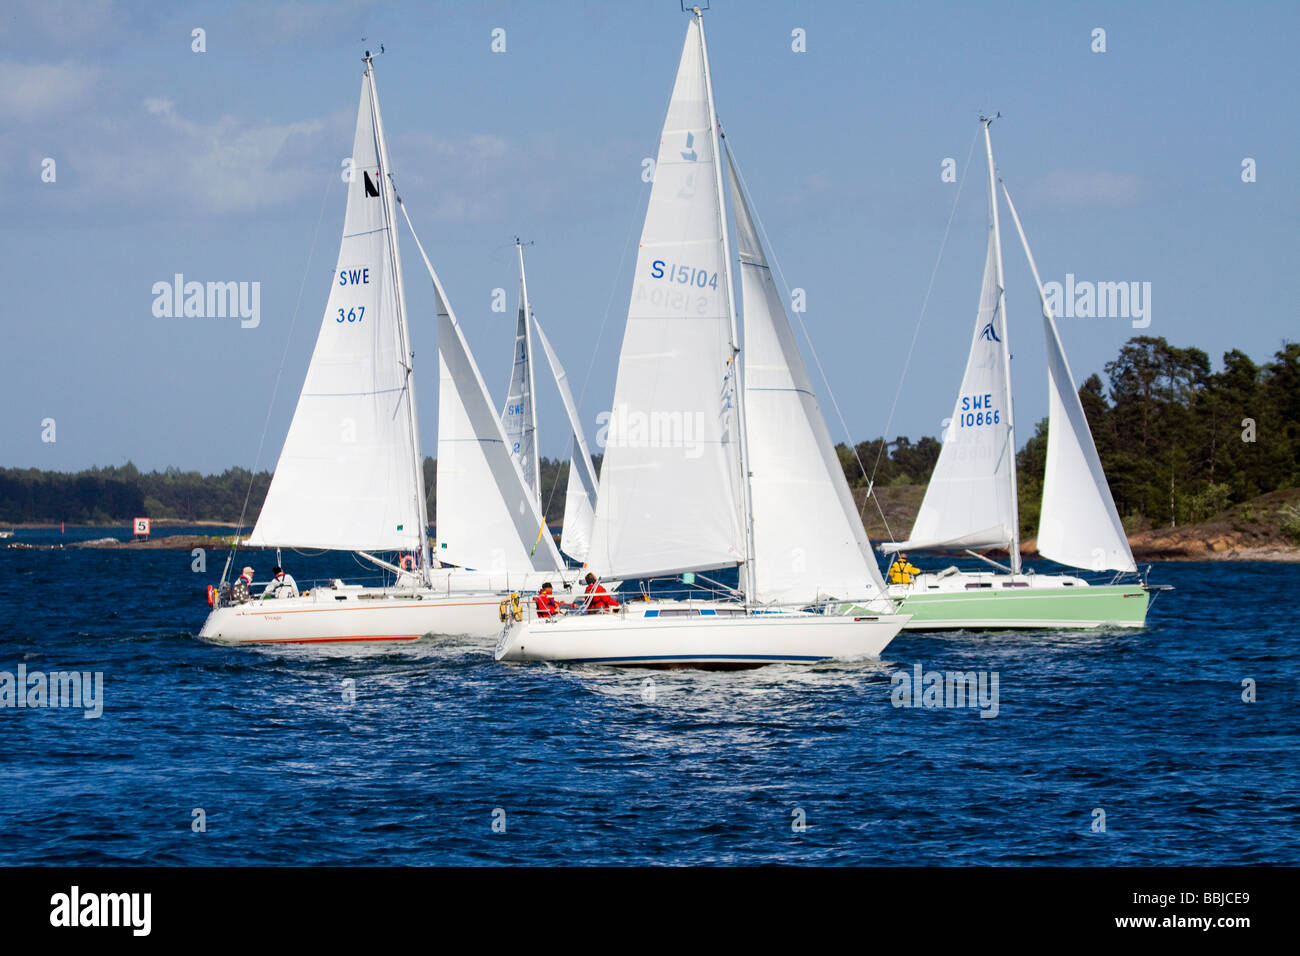 Four sailboat on raceday Stock Photo